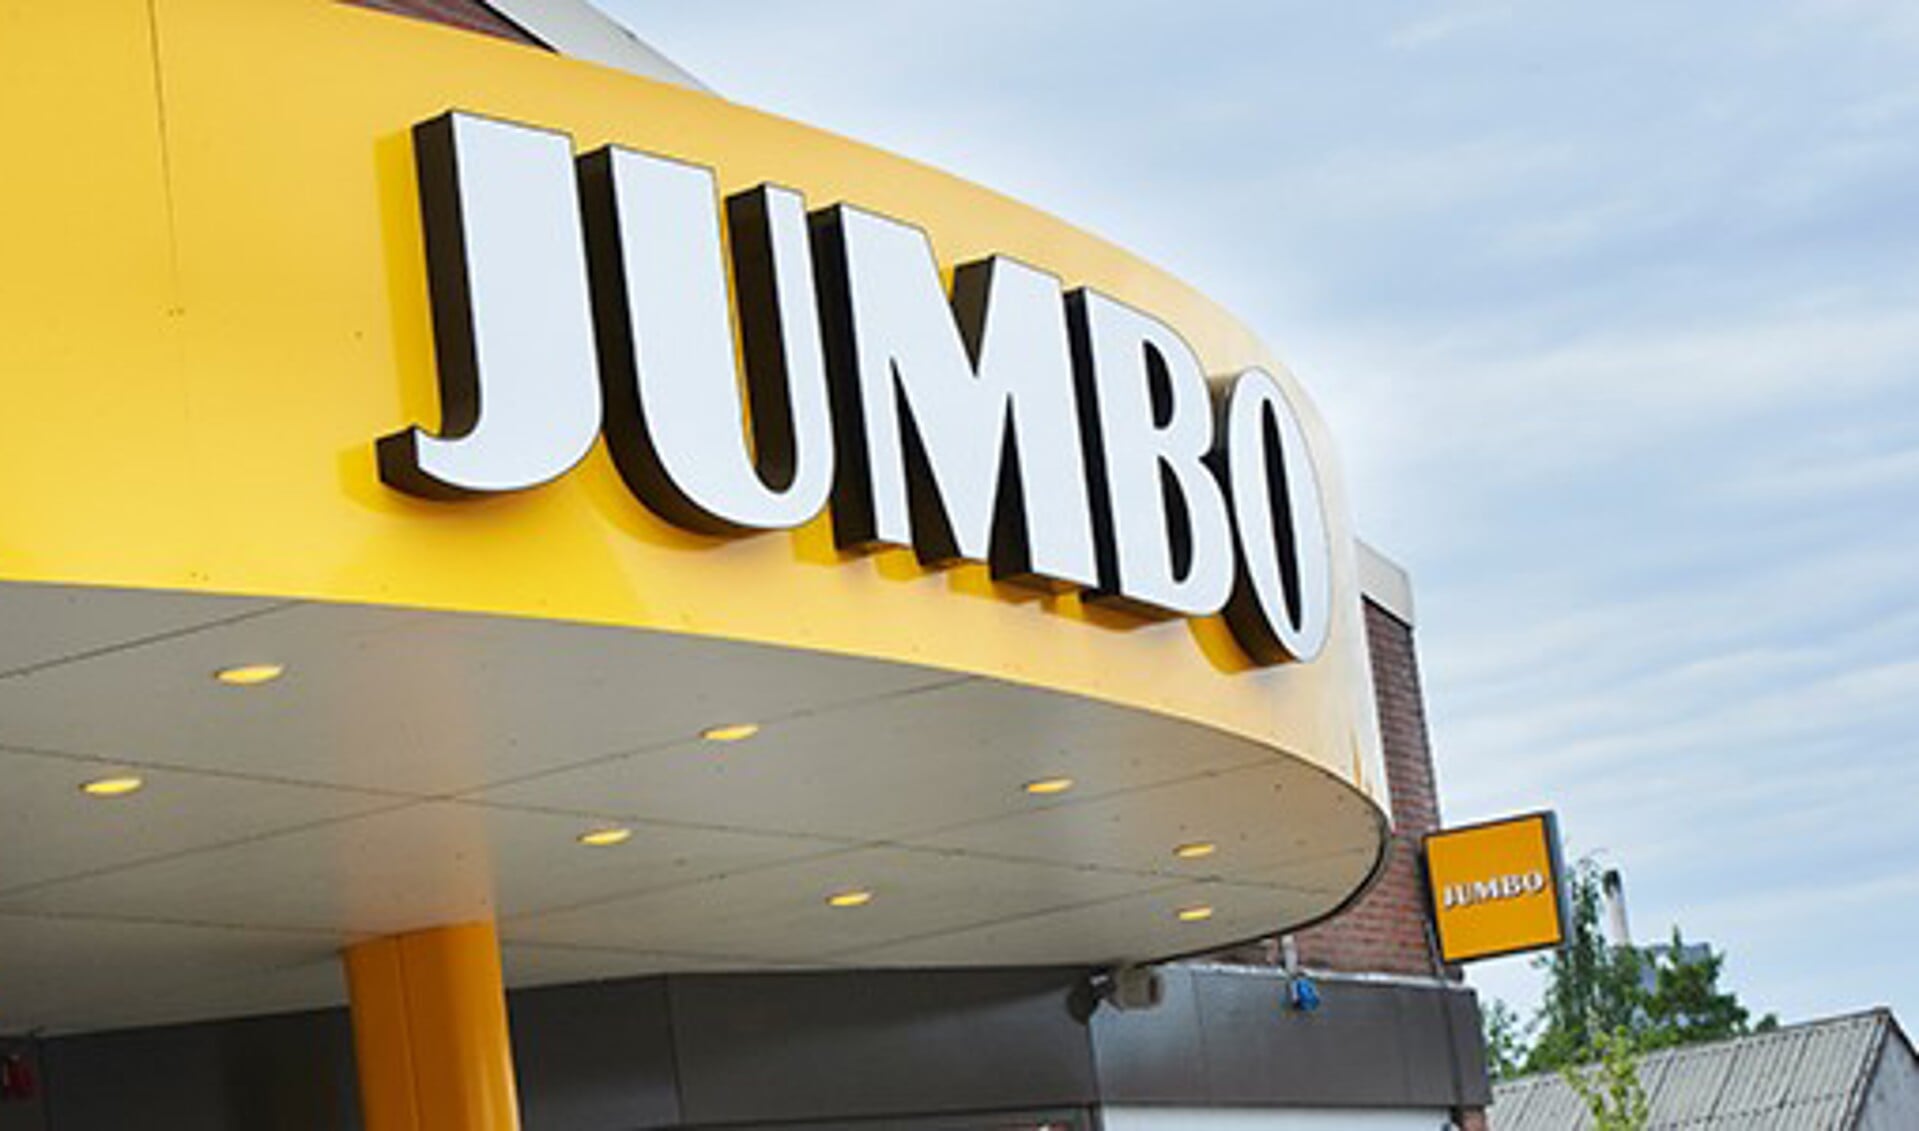 Jumbo opent op woensdag 12 december de deuren van een nieuwe supermarkt in de omgebouwde EMTÉ winkel aan de Stationsstraat 11 in Veghel. 